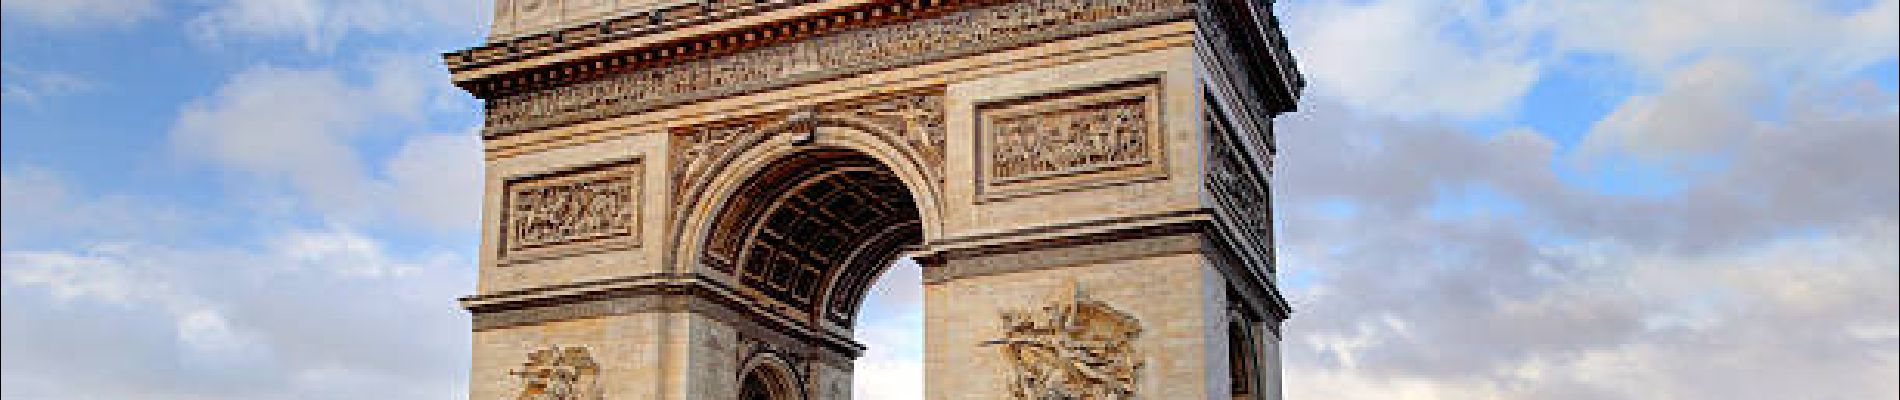 Point of interest Paris - Arc de triomphe - Photo